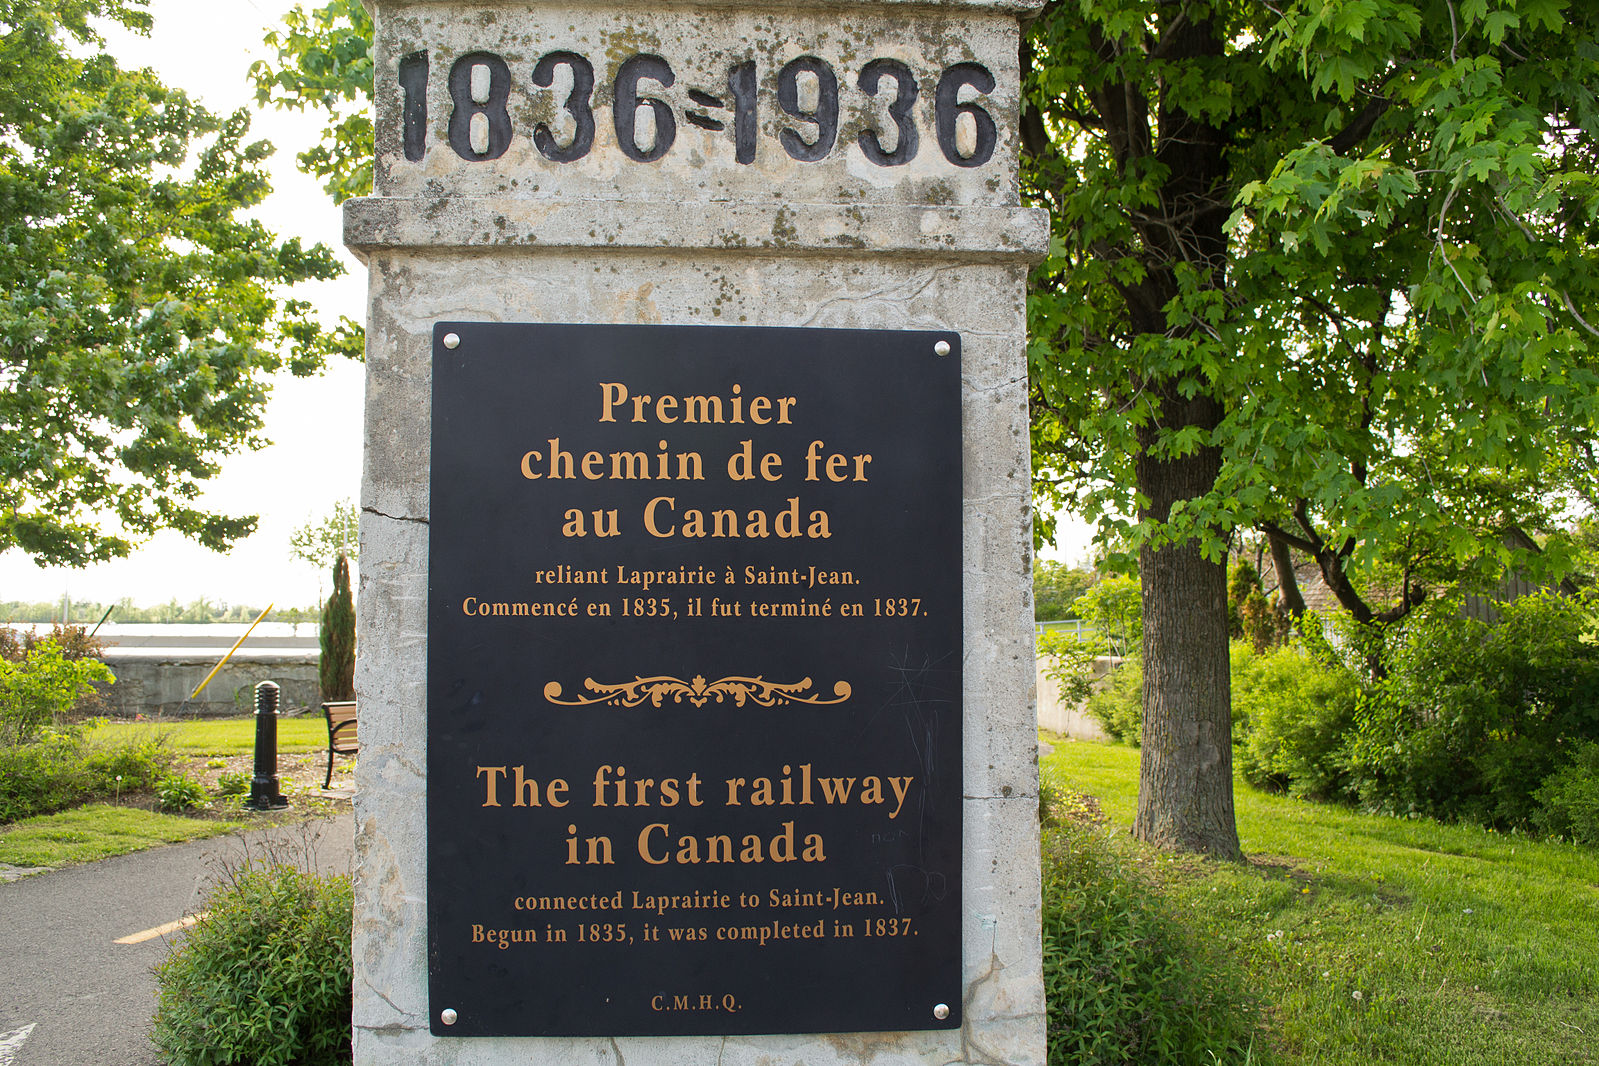 25 février 1832  Début de la Champlain & St. Lawrence Railroad